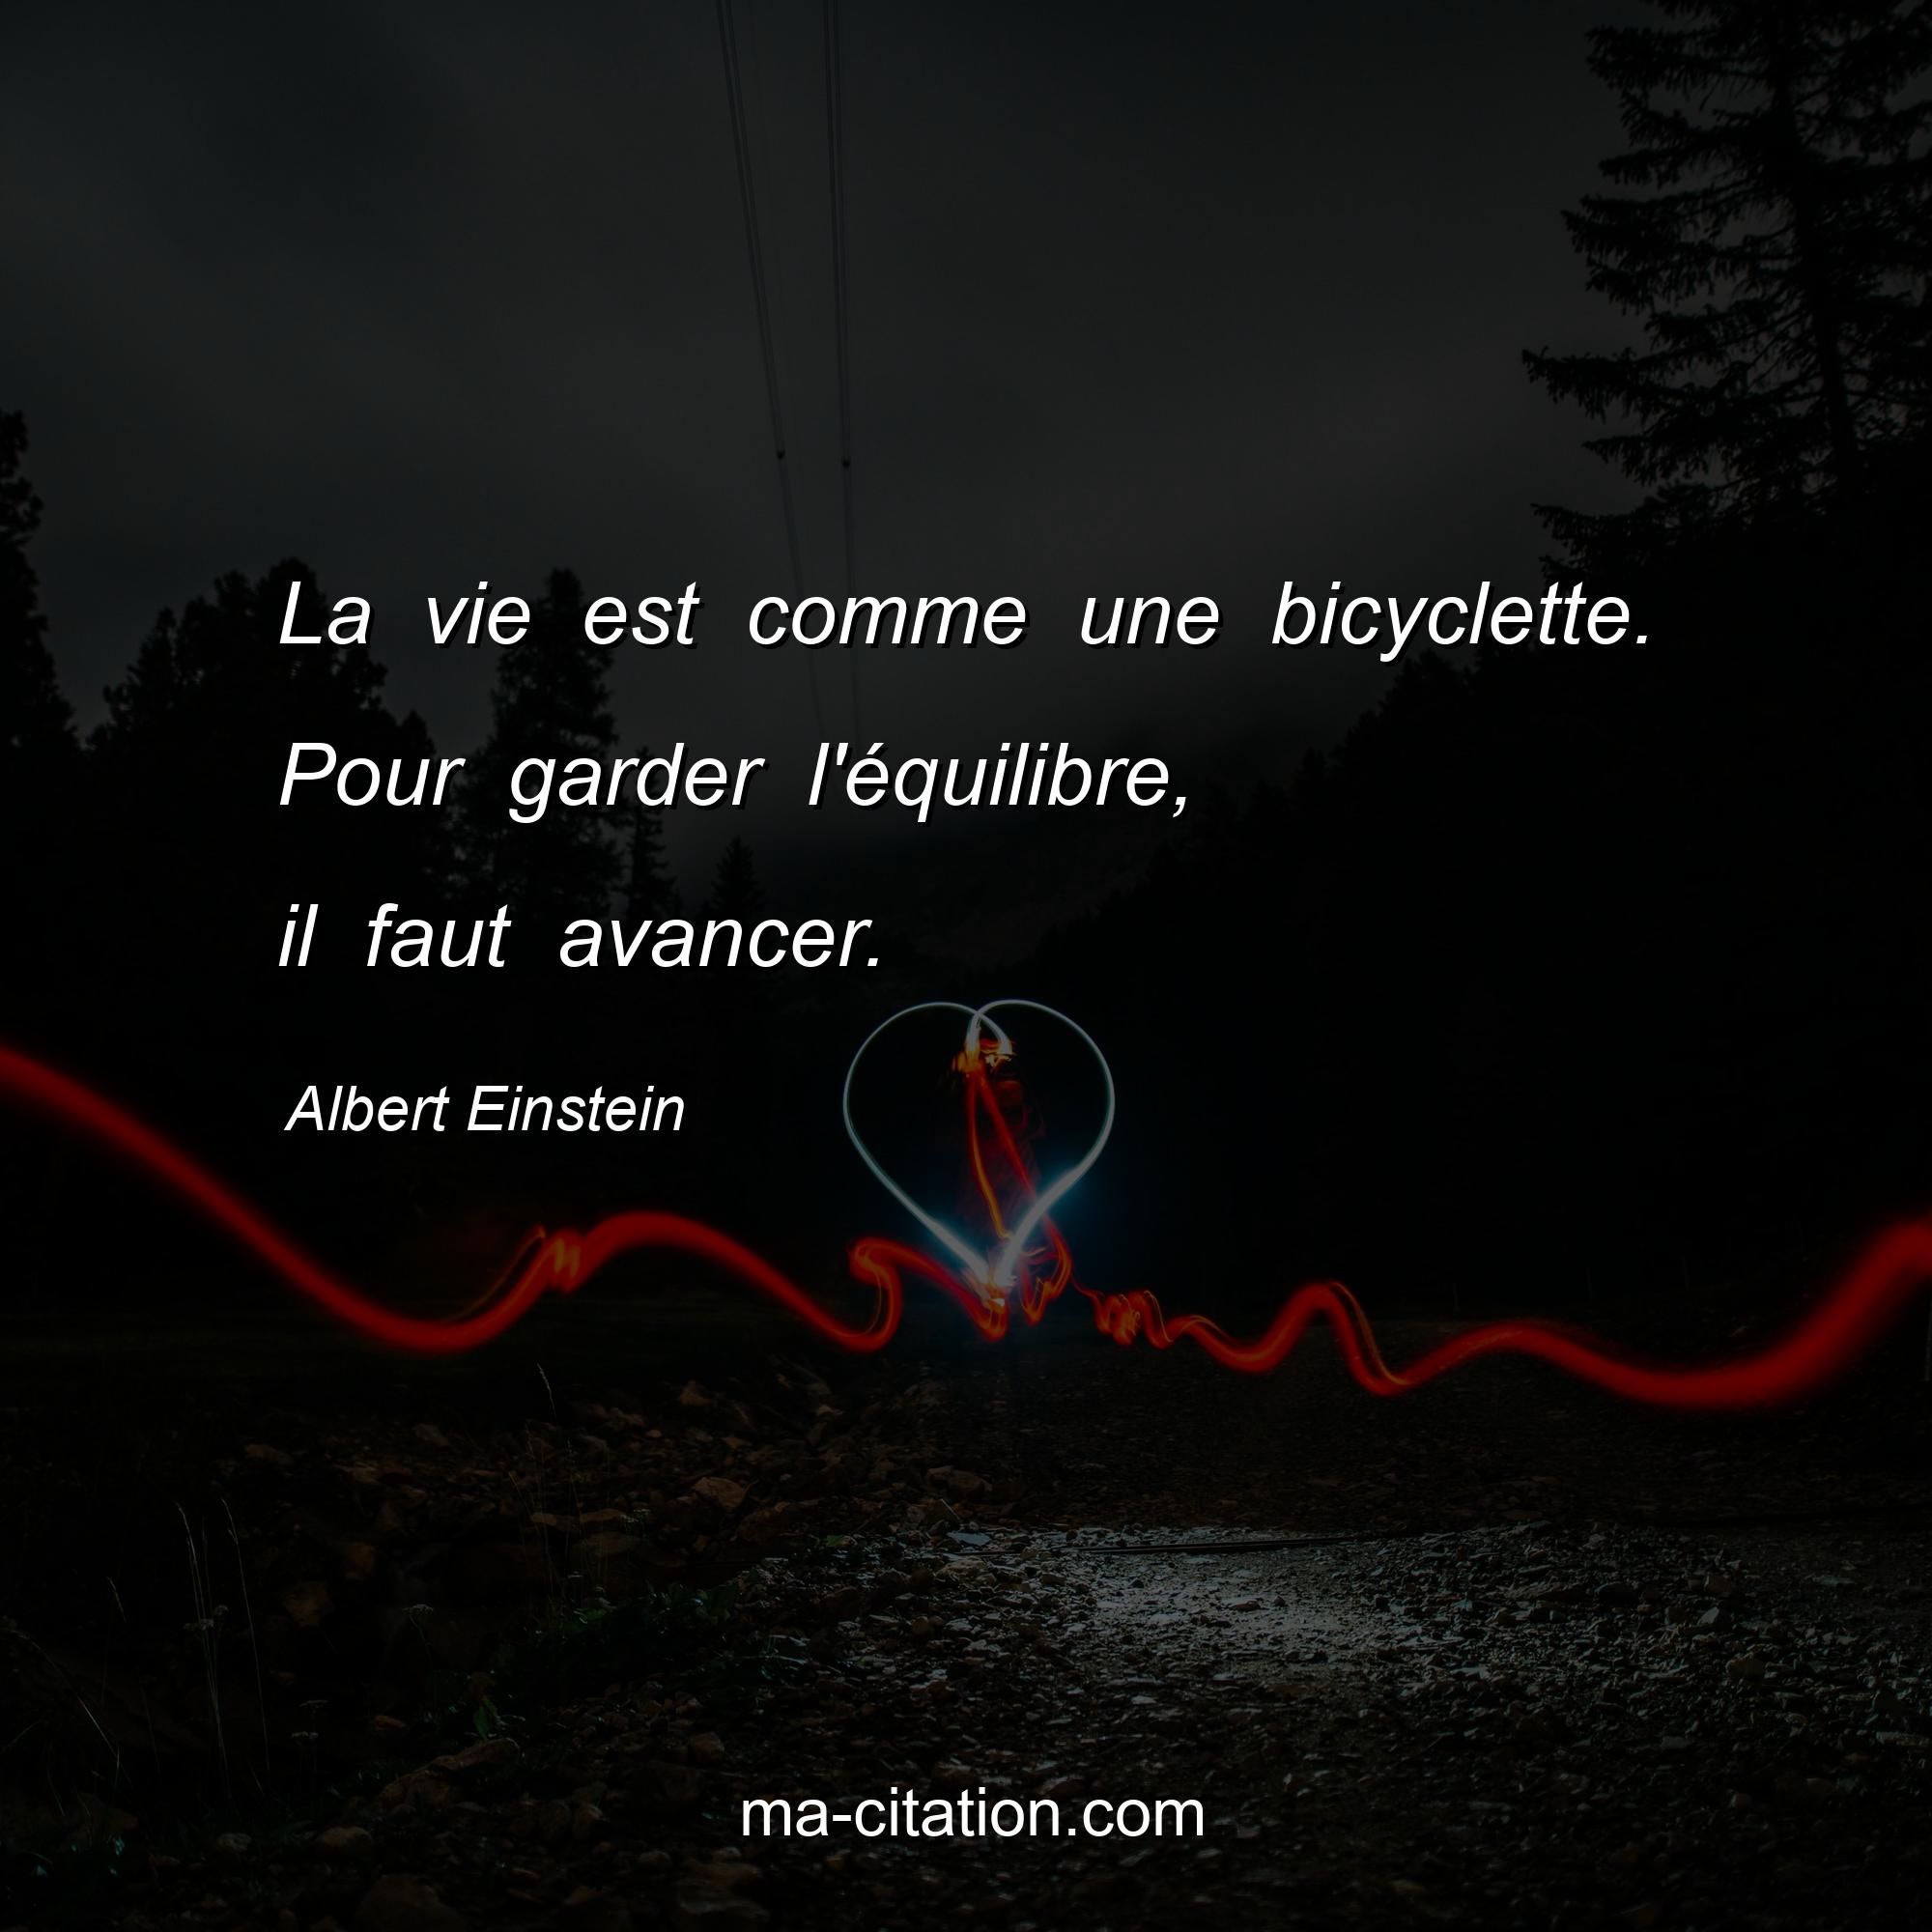 Albert Einstein : La vie est comme une bicyclette. Pour garder l'équilibre, il faut avancer.